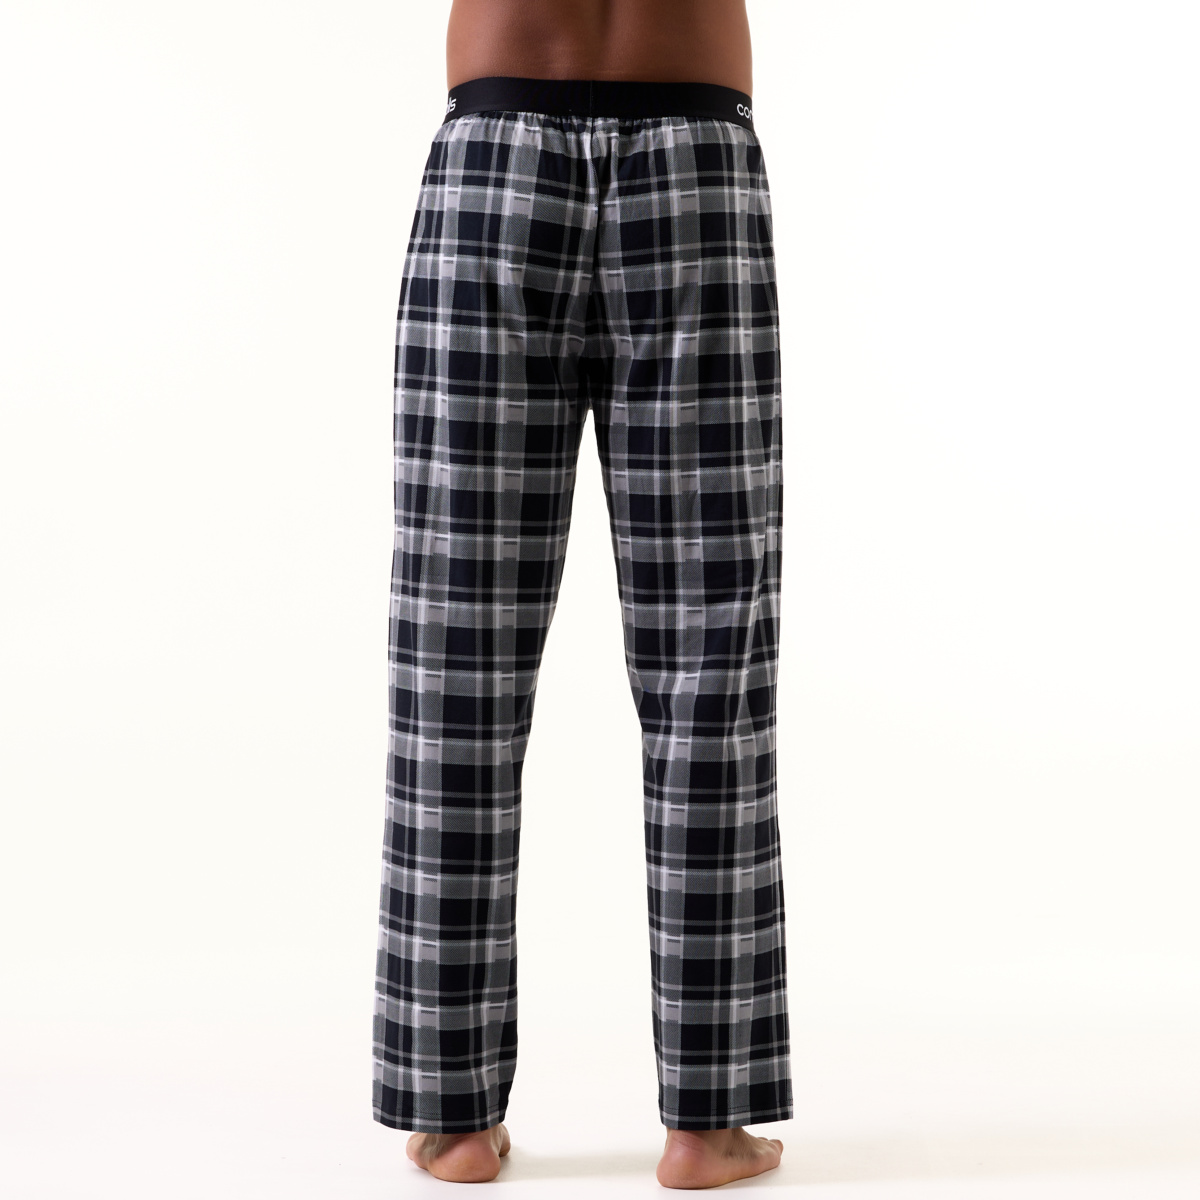 Comfy Pyjama Pants Man Black Check 